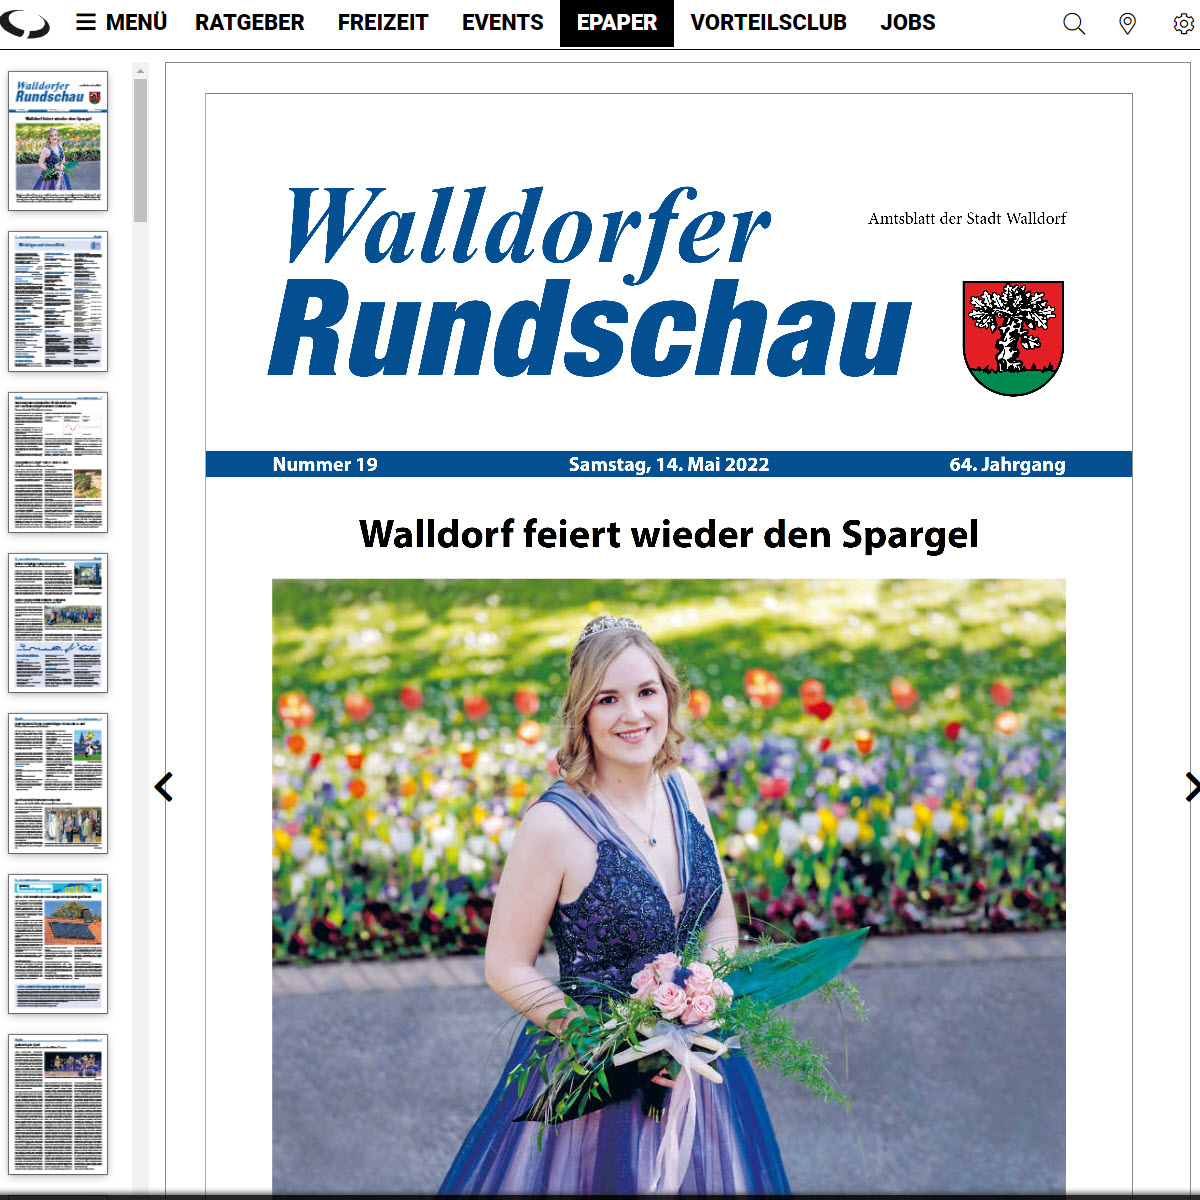 Die Walldorfer Rundschau 2022 Nr. 19 als E-Paper | Bildschirmabgriff: Dr. Clemens Kriesel